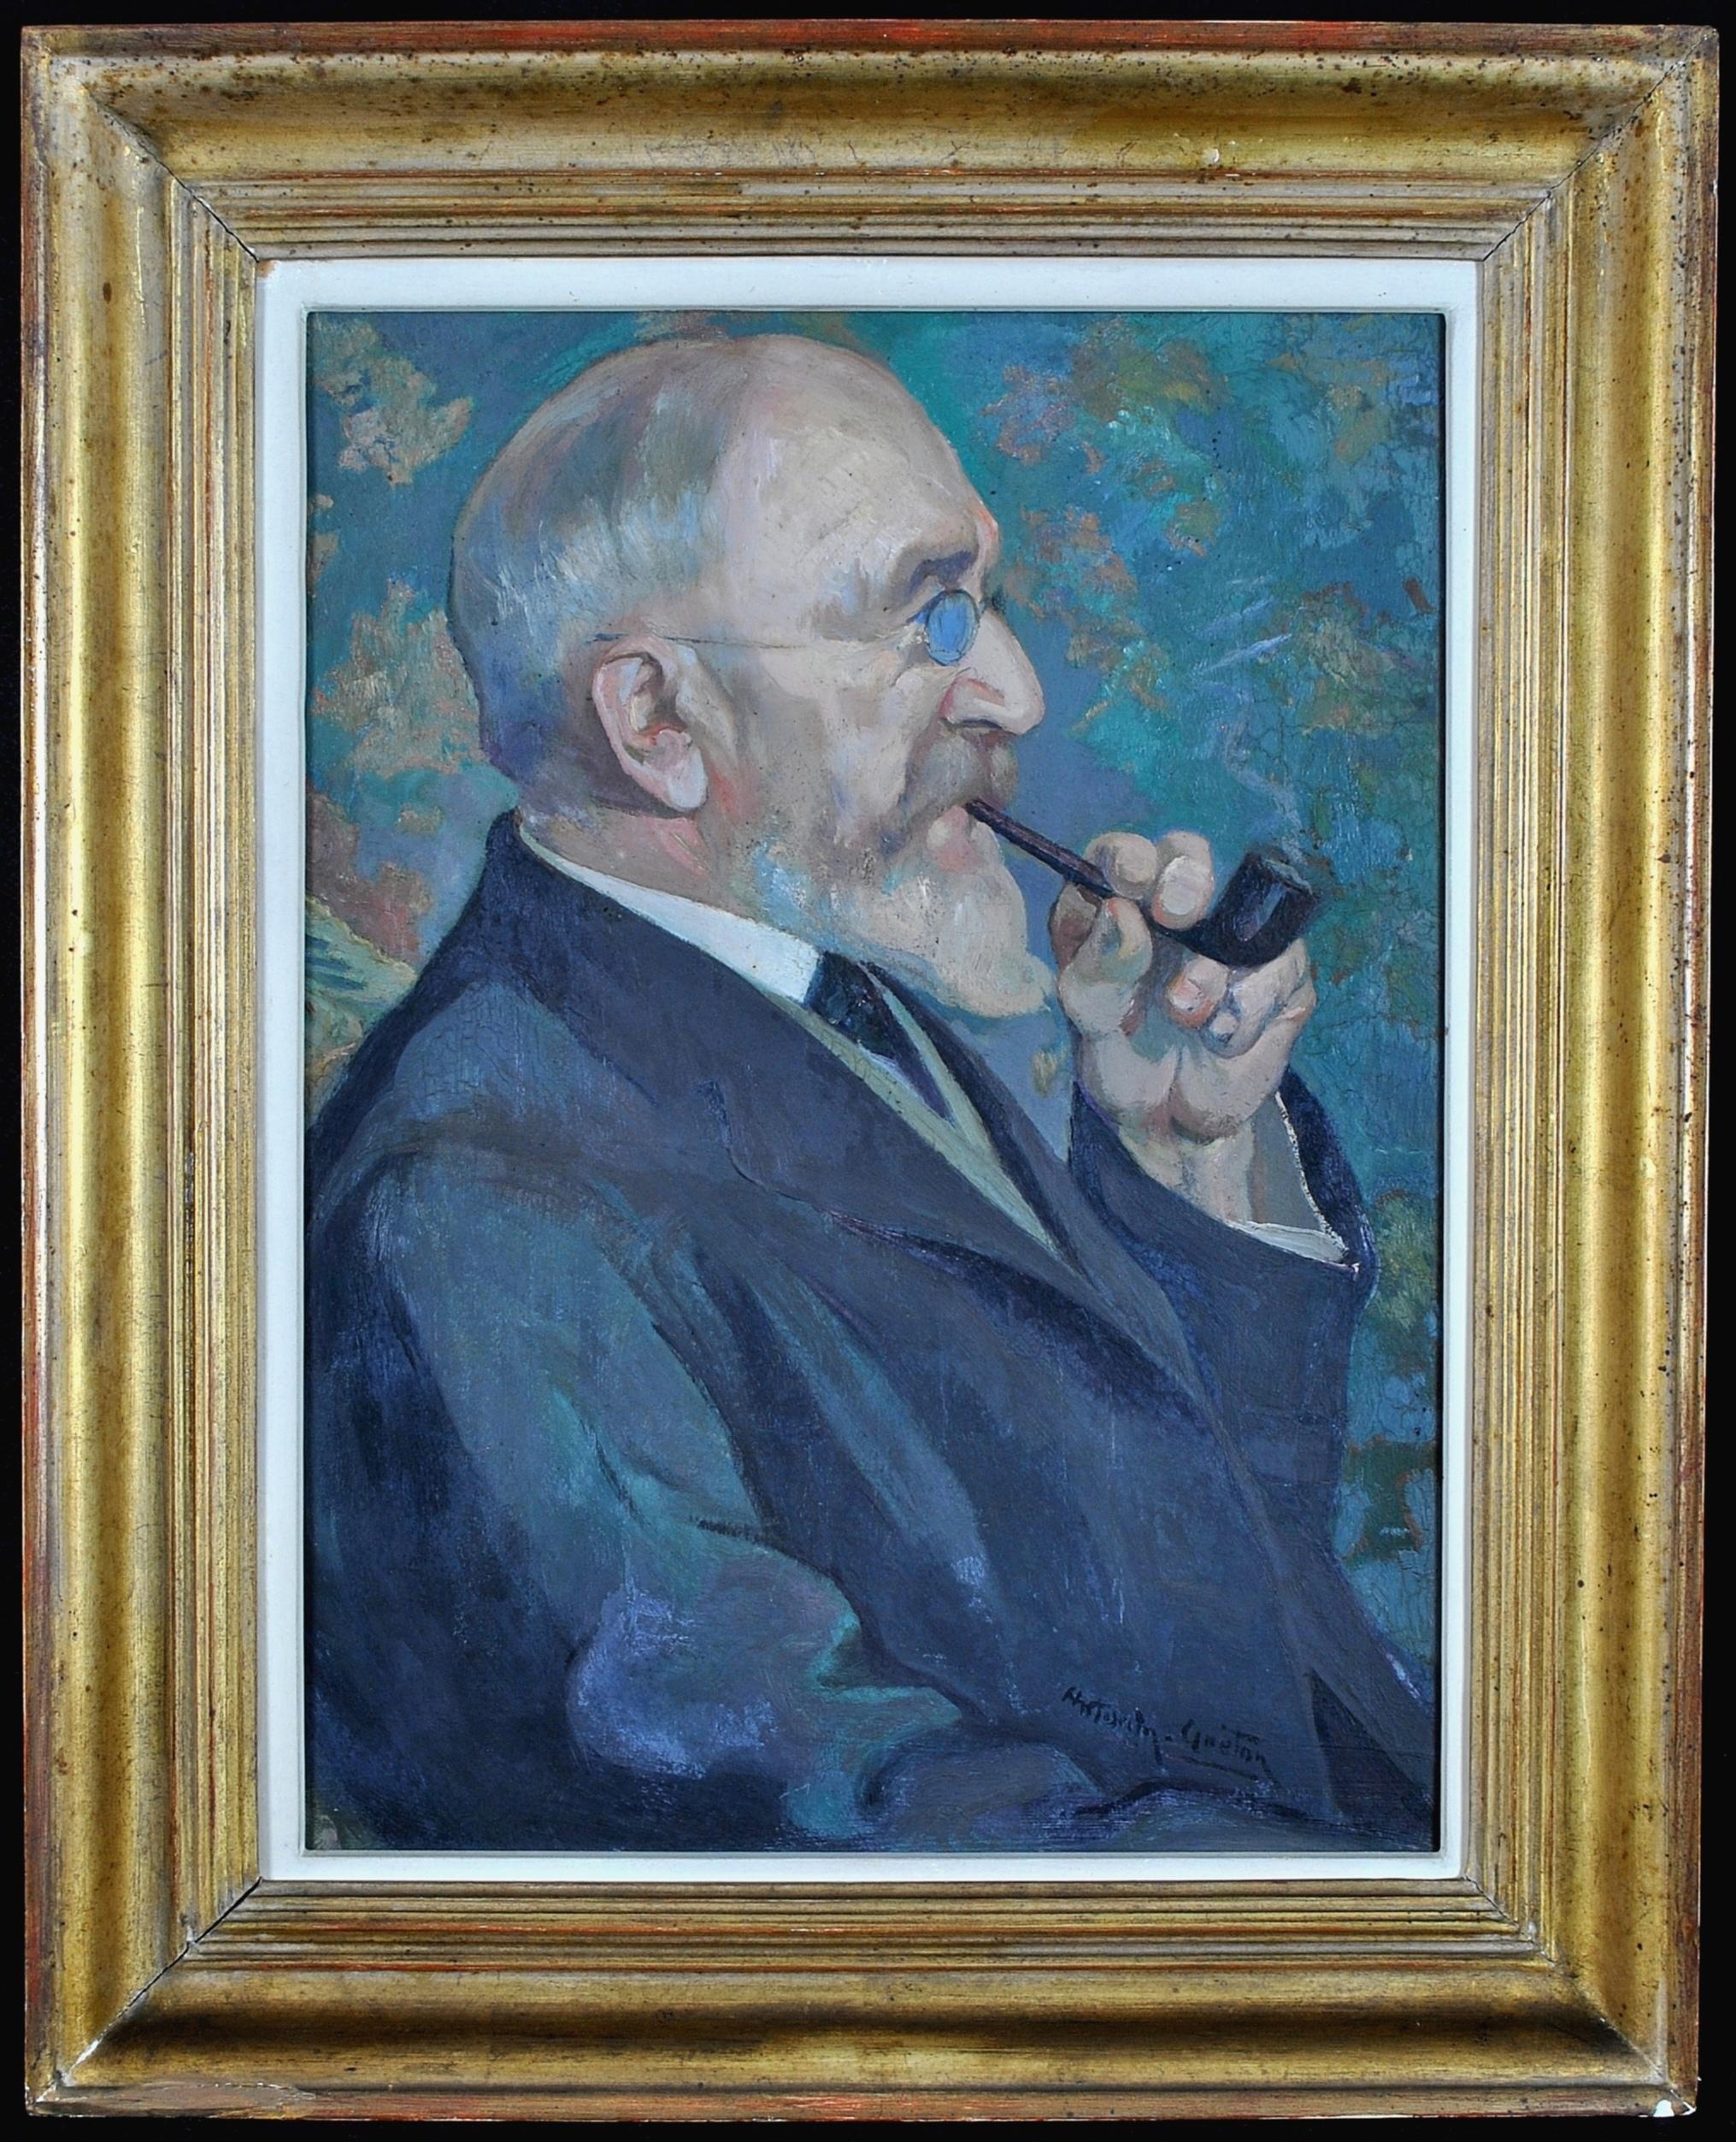 Gentleman with a Pipe - Peinture à l'huile post-impressionniste française d'un portrait de fumeur